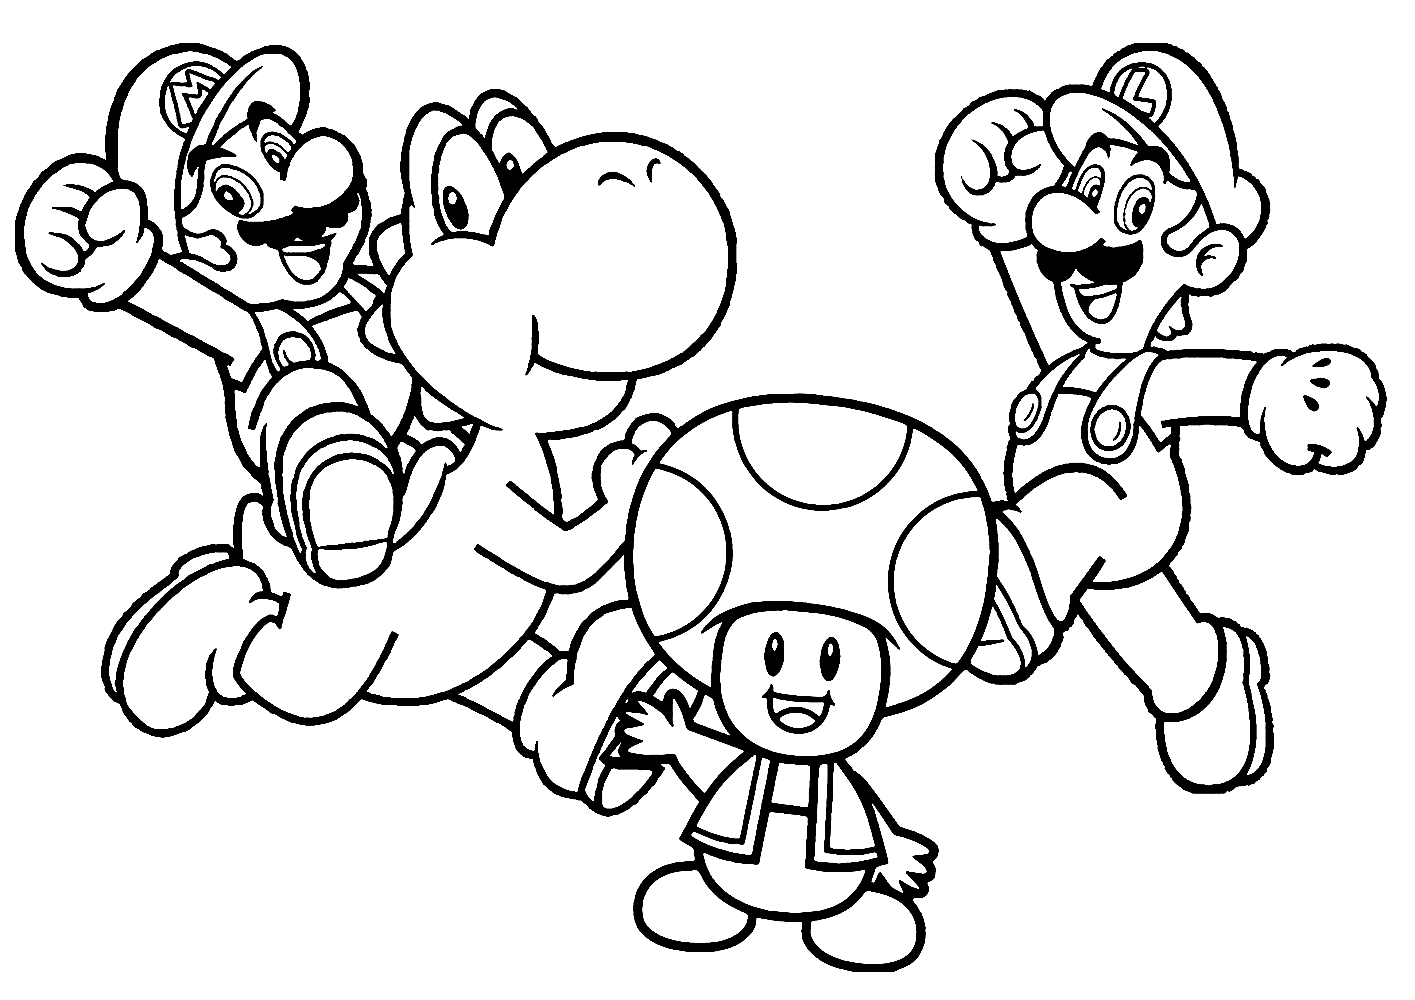 Mario, Luigi and Toad, Mario Coloring Page